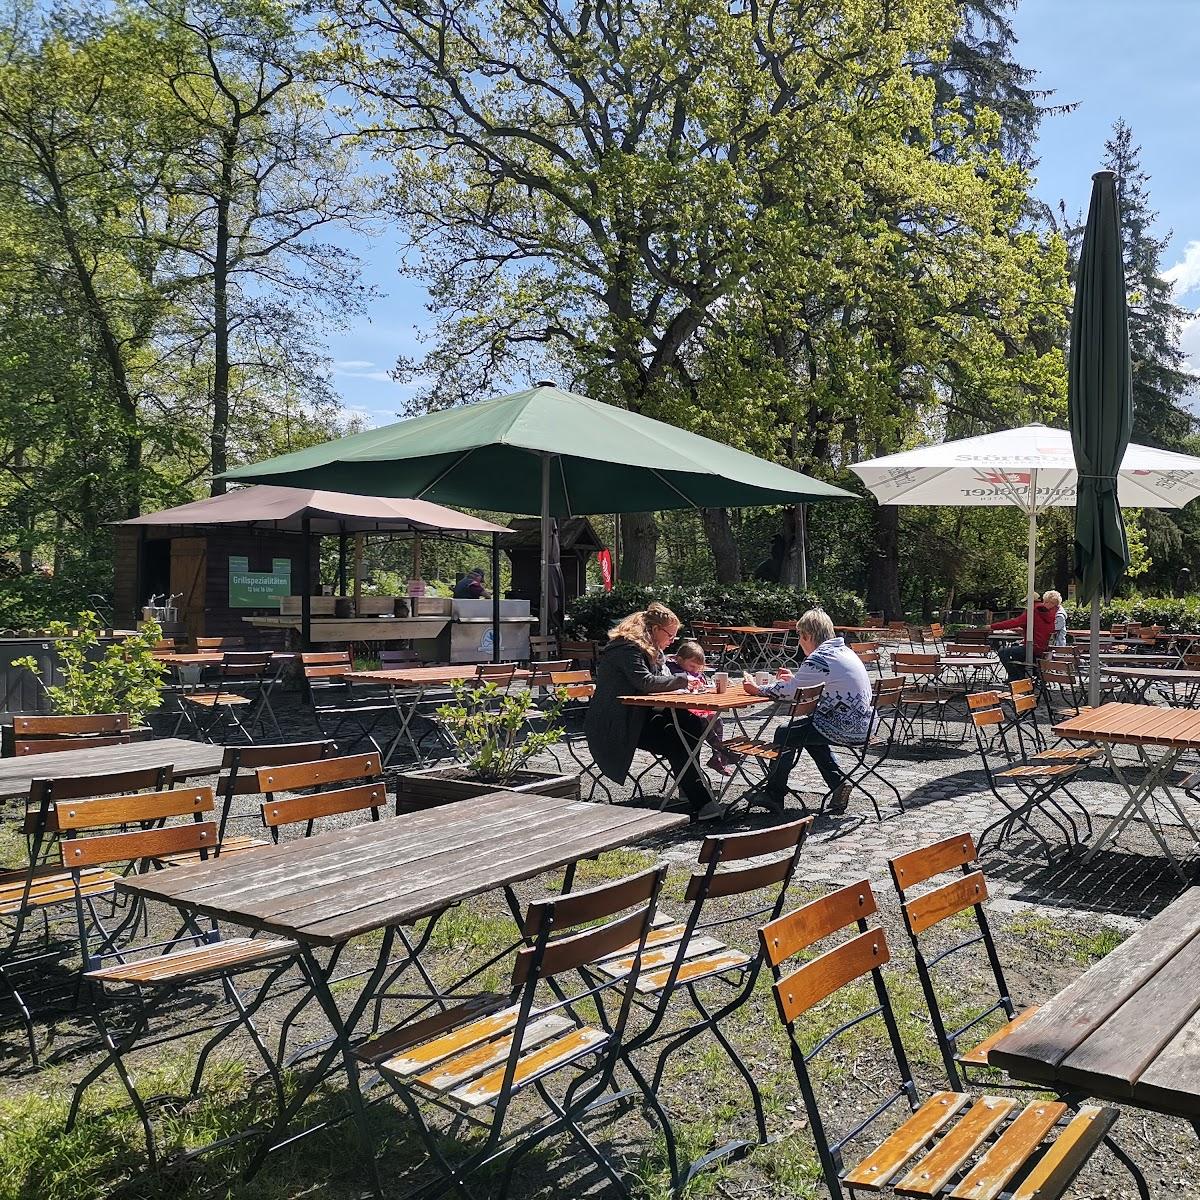 Restaurant "Café & Biergarten Sundische Wiese" in Zingst